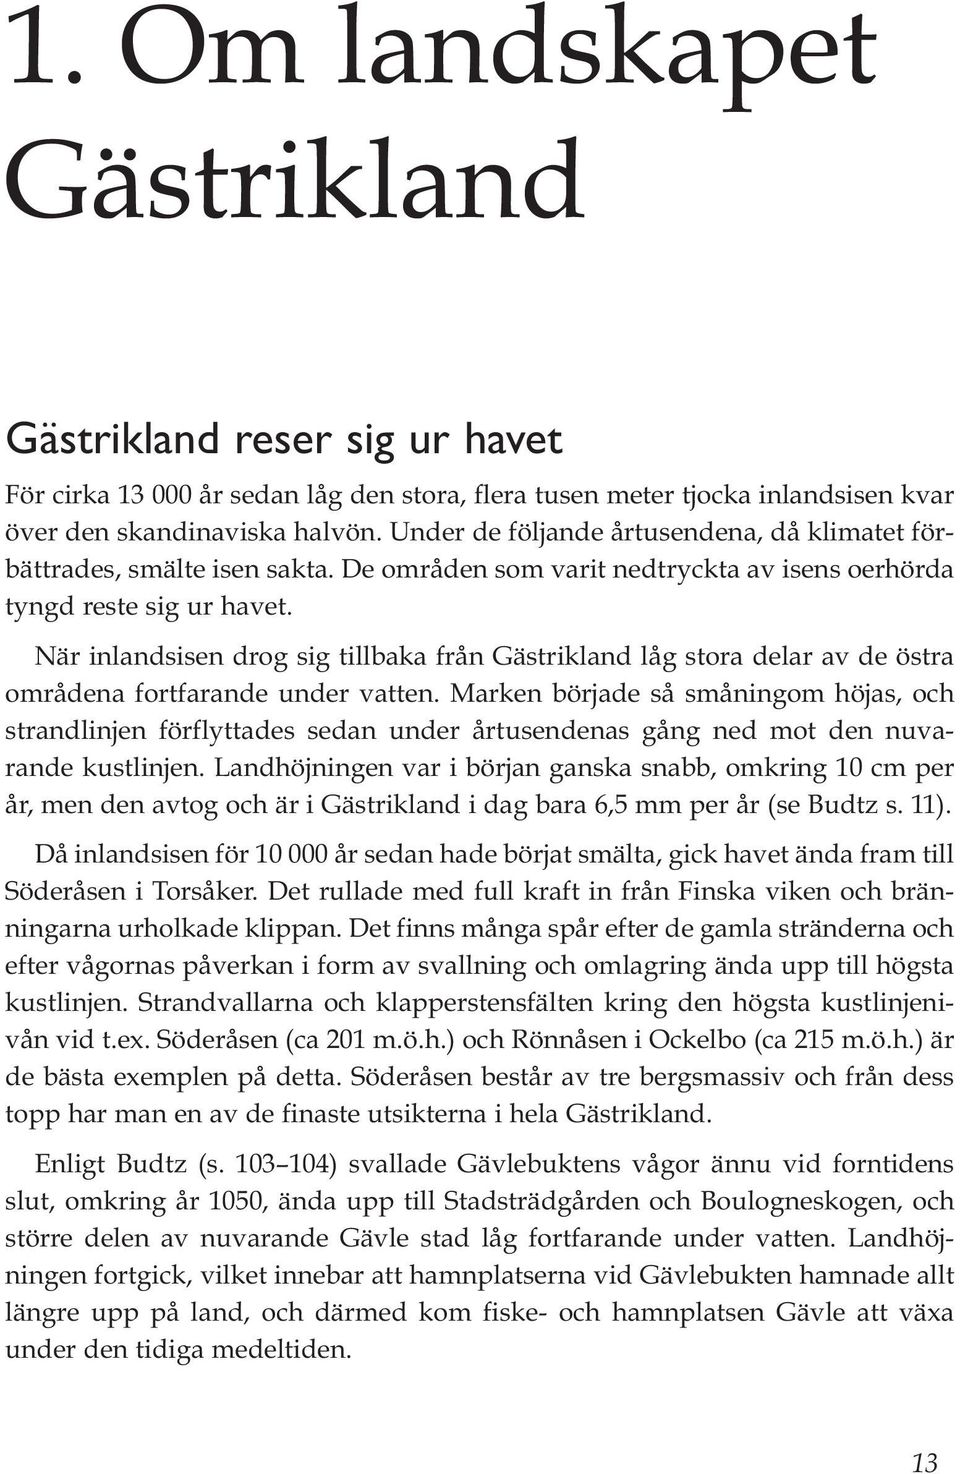 När inlandsisen drog sig tillbaka från Gästrikland låg stora delar av de östra områdena fortfarande under vatten.